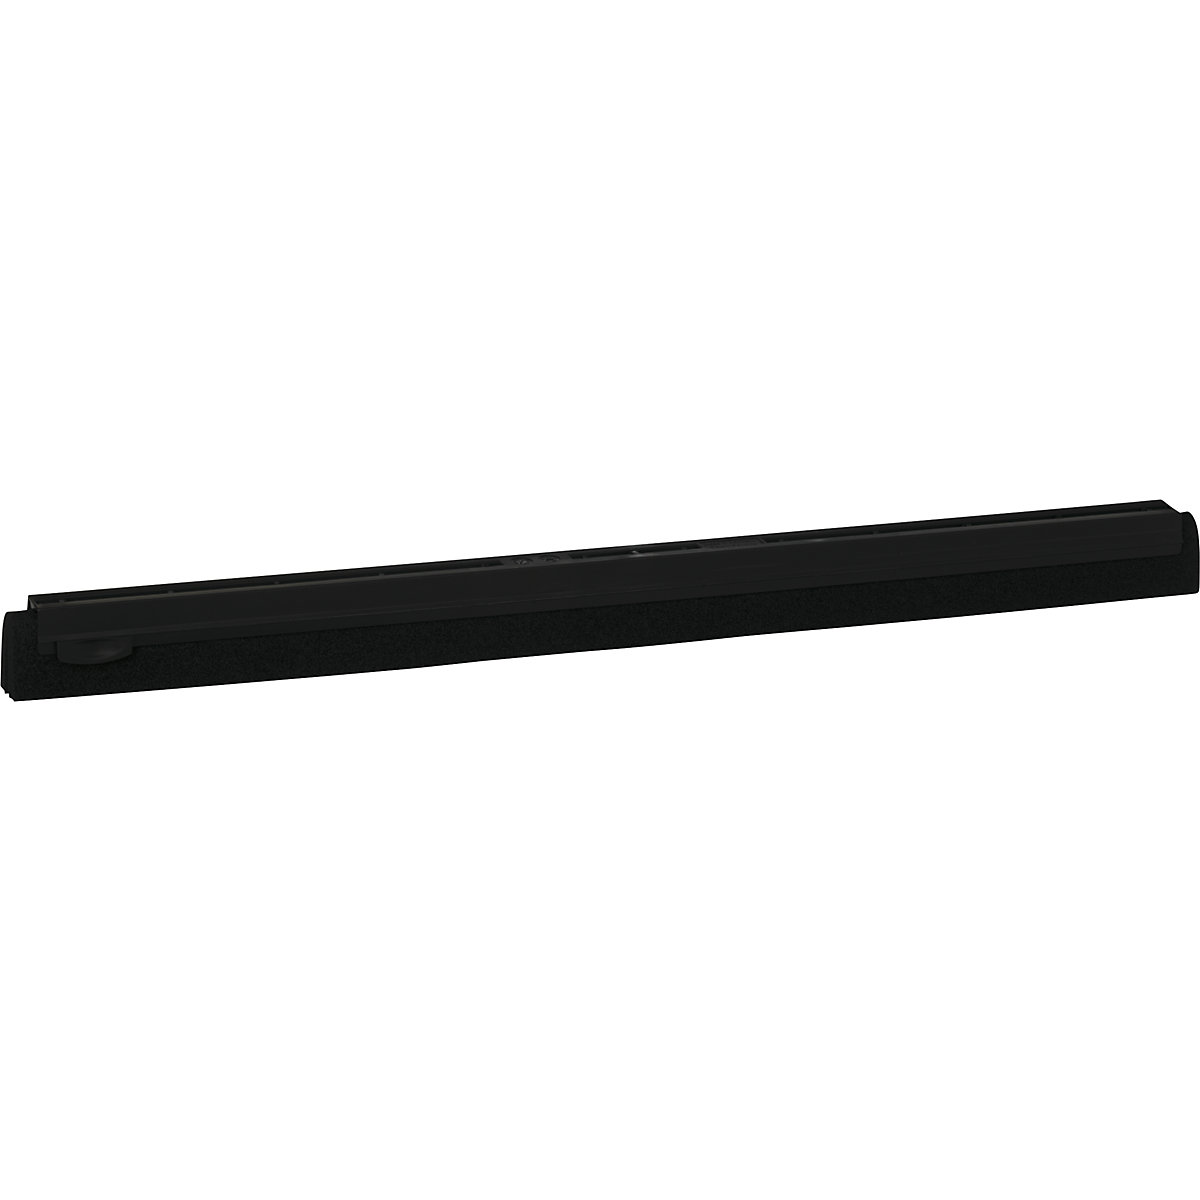 Náhradní kazeta pro stěrku – Vikan, délka 600 mm, bal.j. 20 ks, černá-4